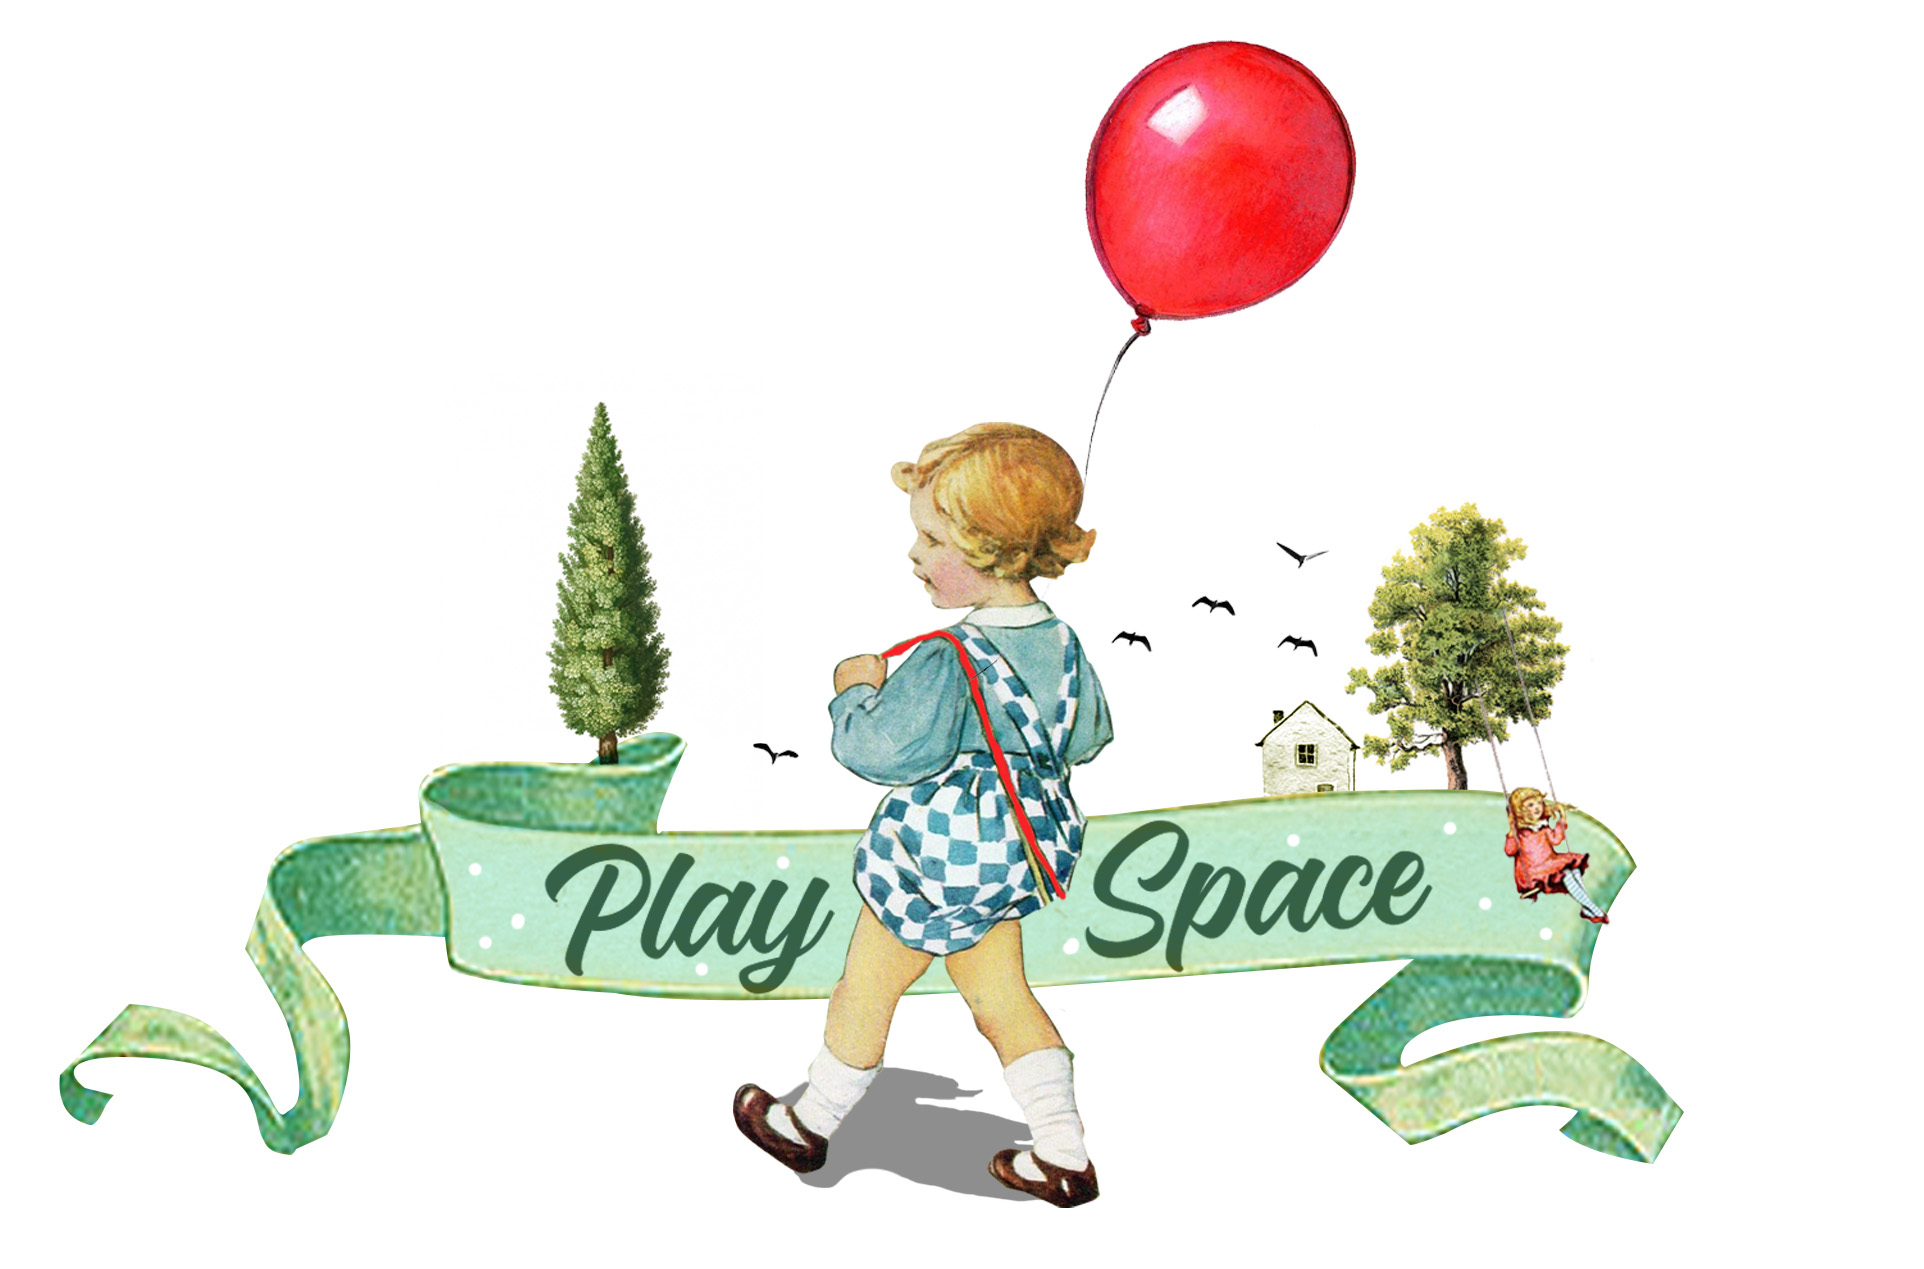 gd1-playspace-logo.jpg